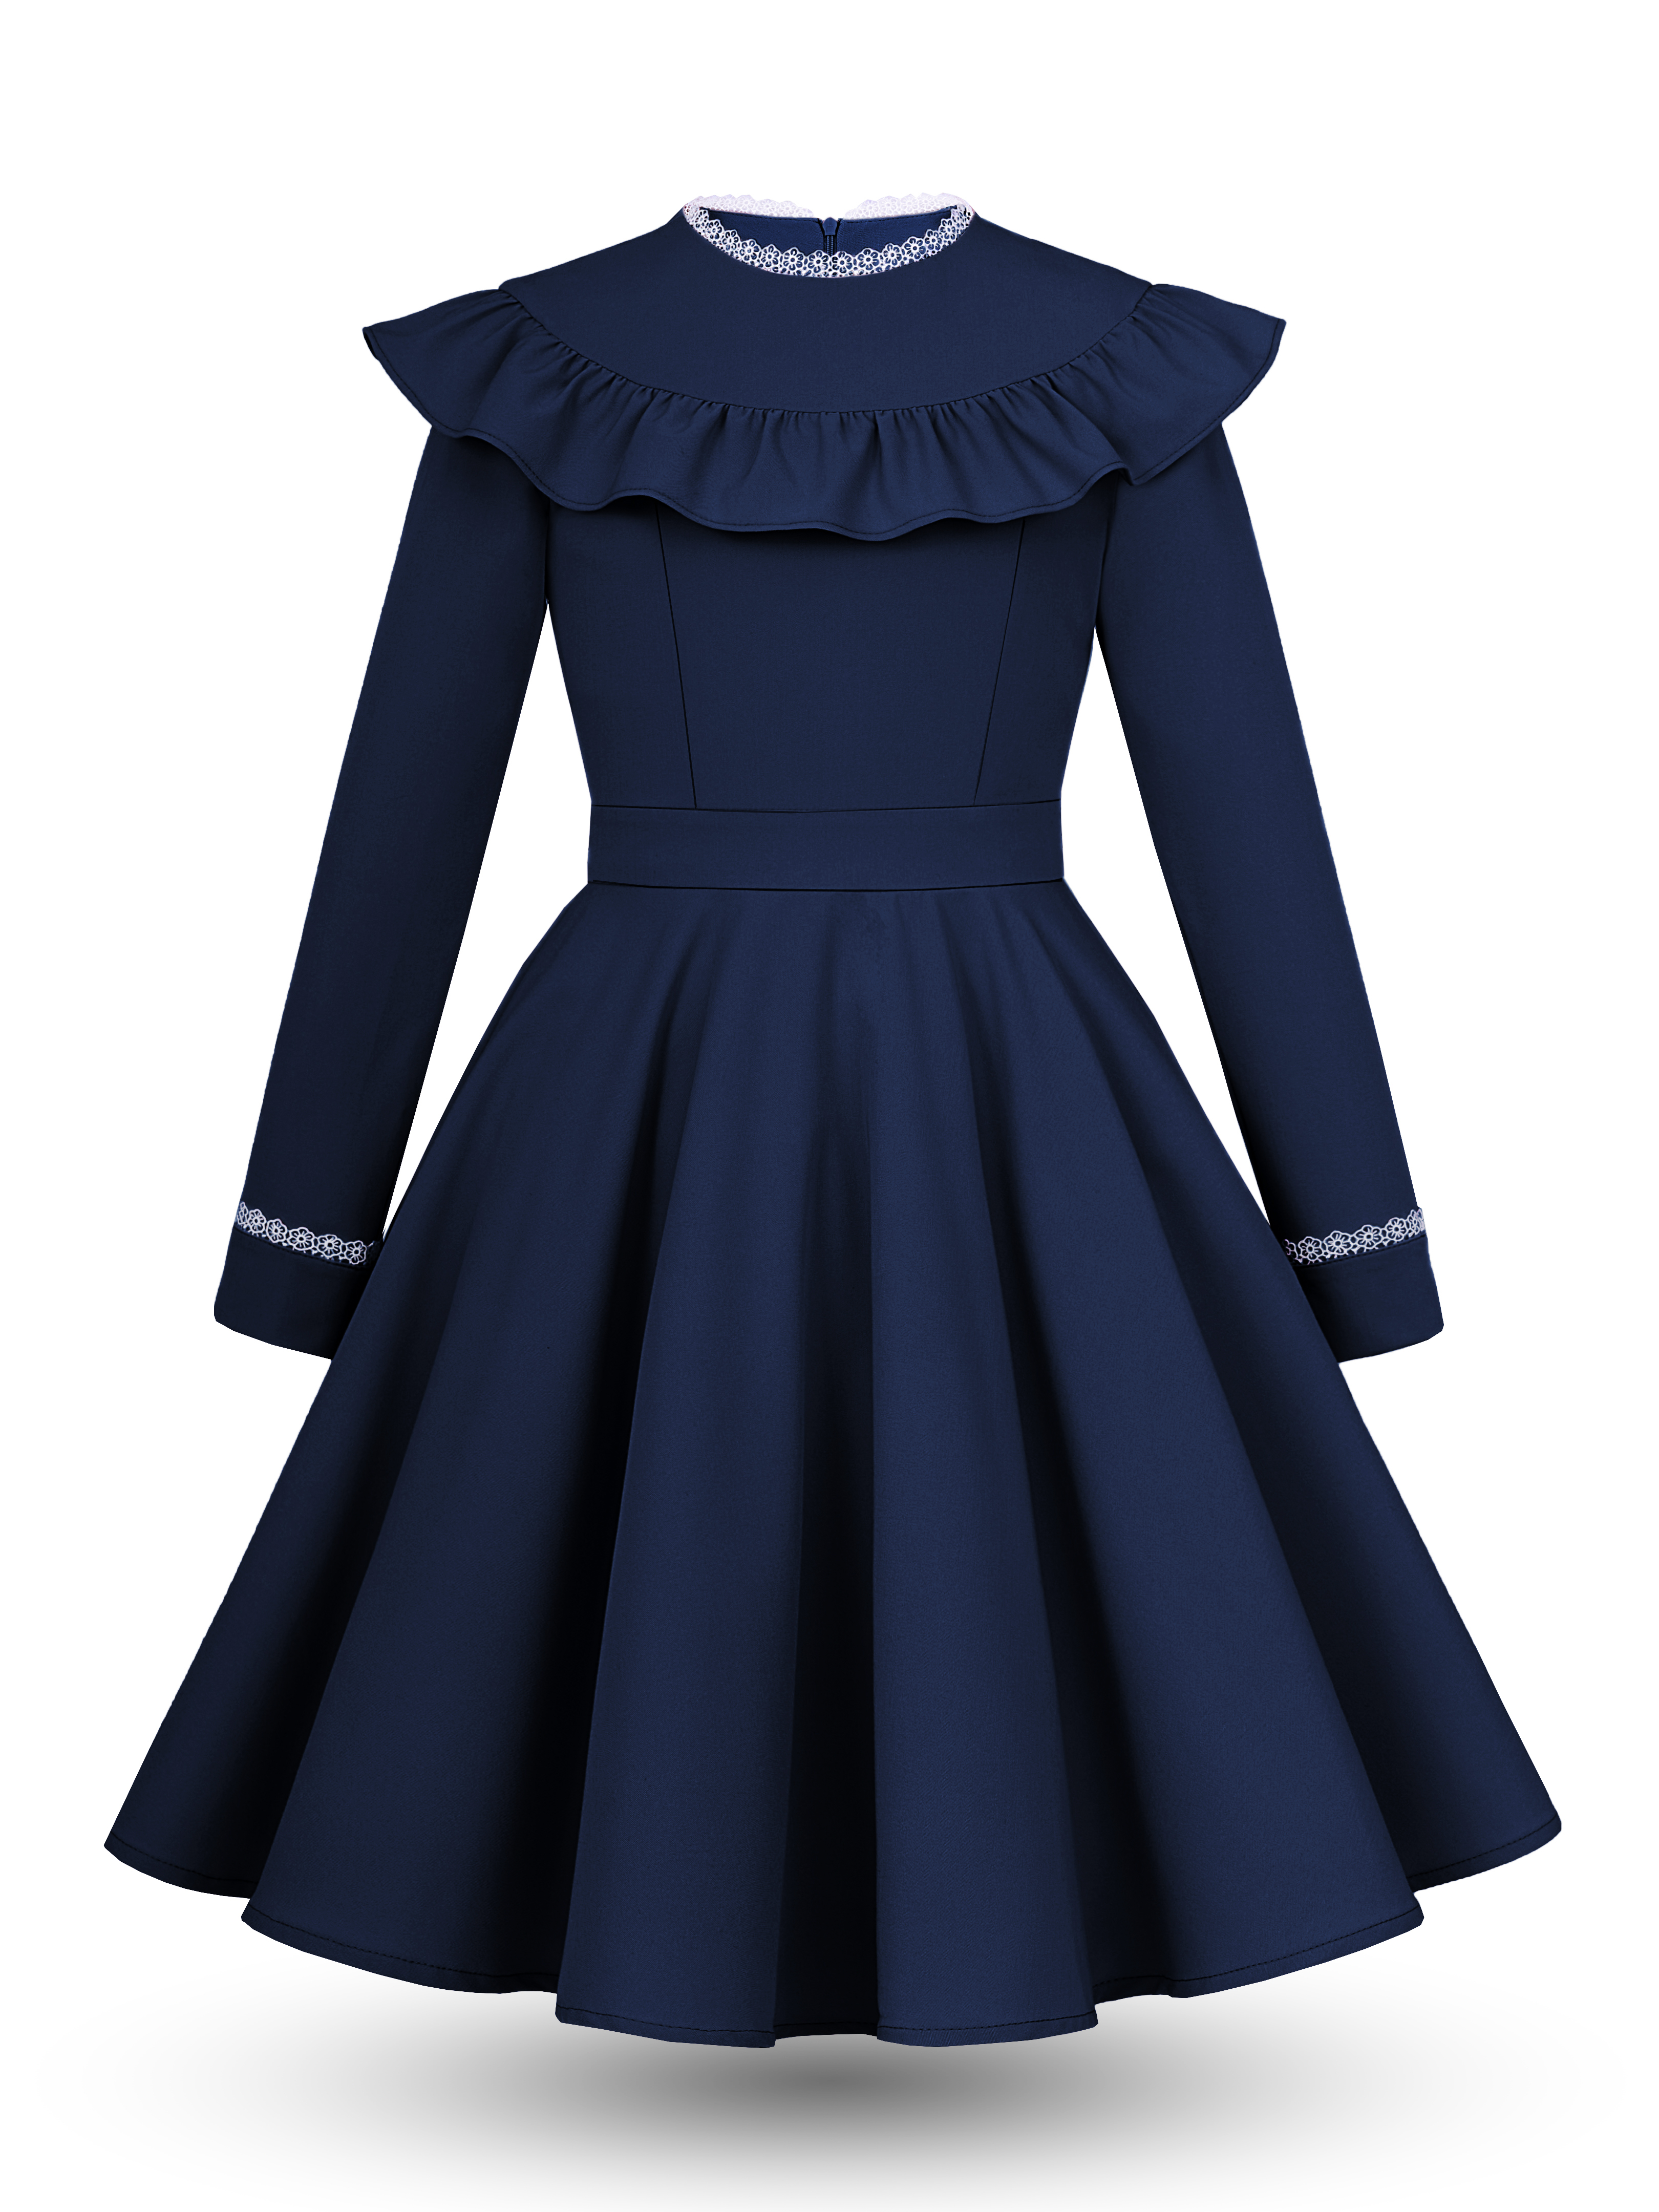 Платье для девочек Alisia Fiori Кианна Sc цв. синий; белый р. 146